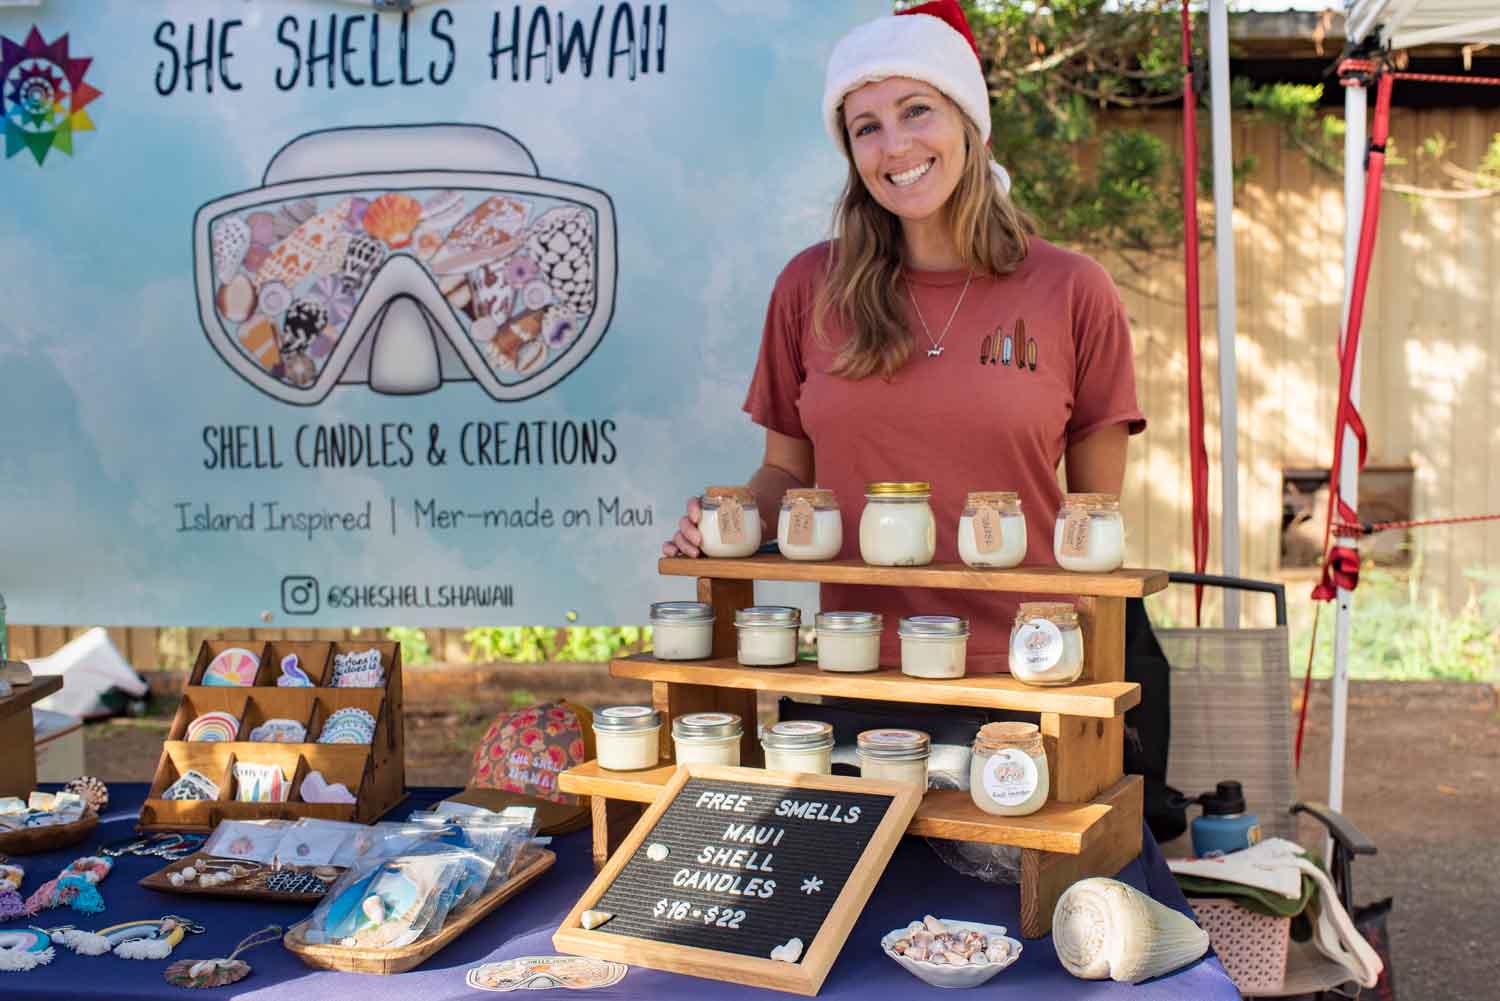 Maui Gifts at She Shells Hawaii